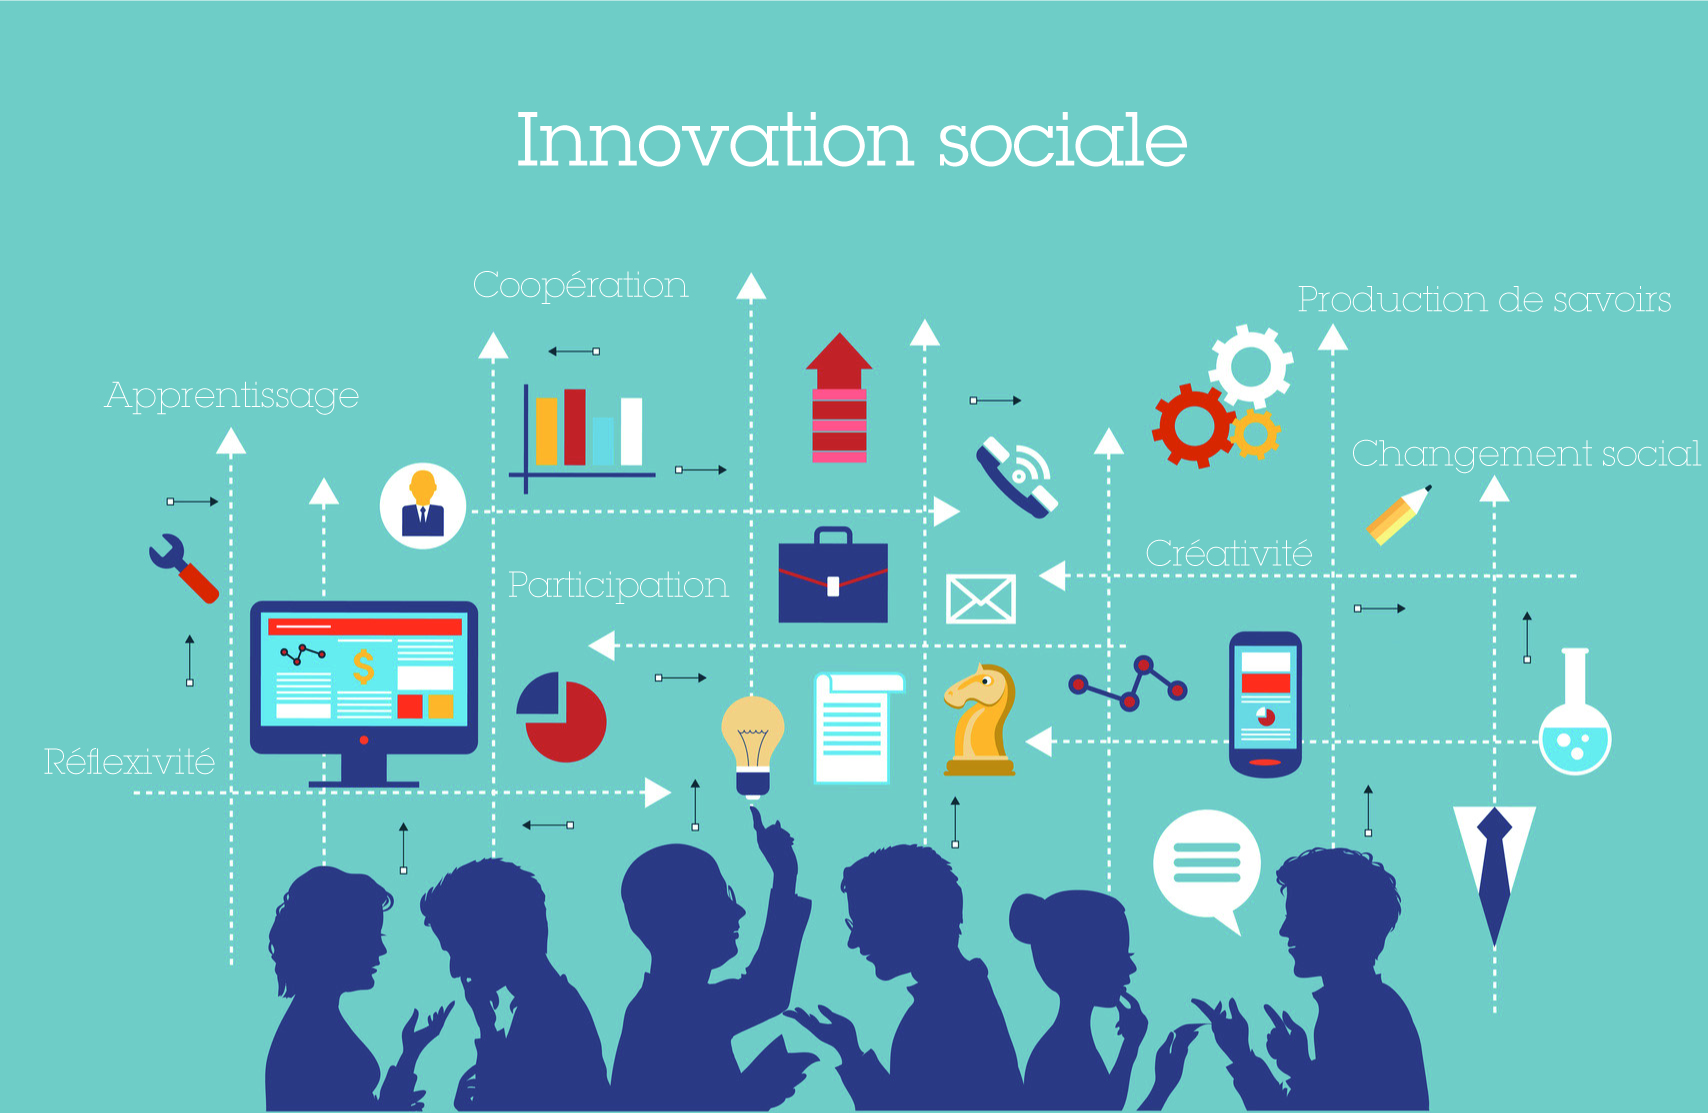 Innovation sociale visuel